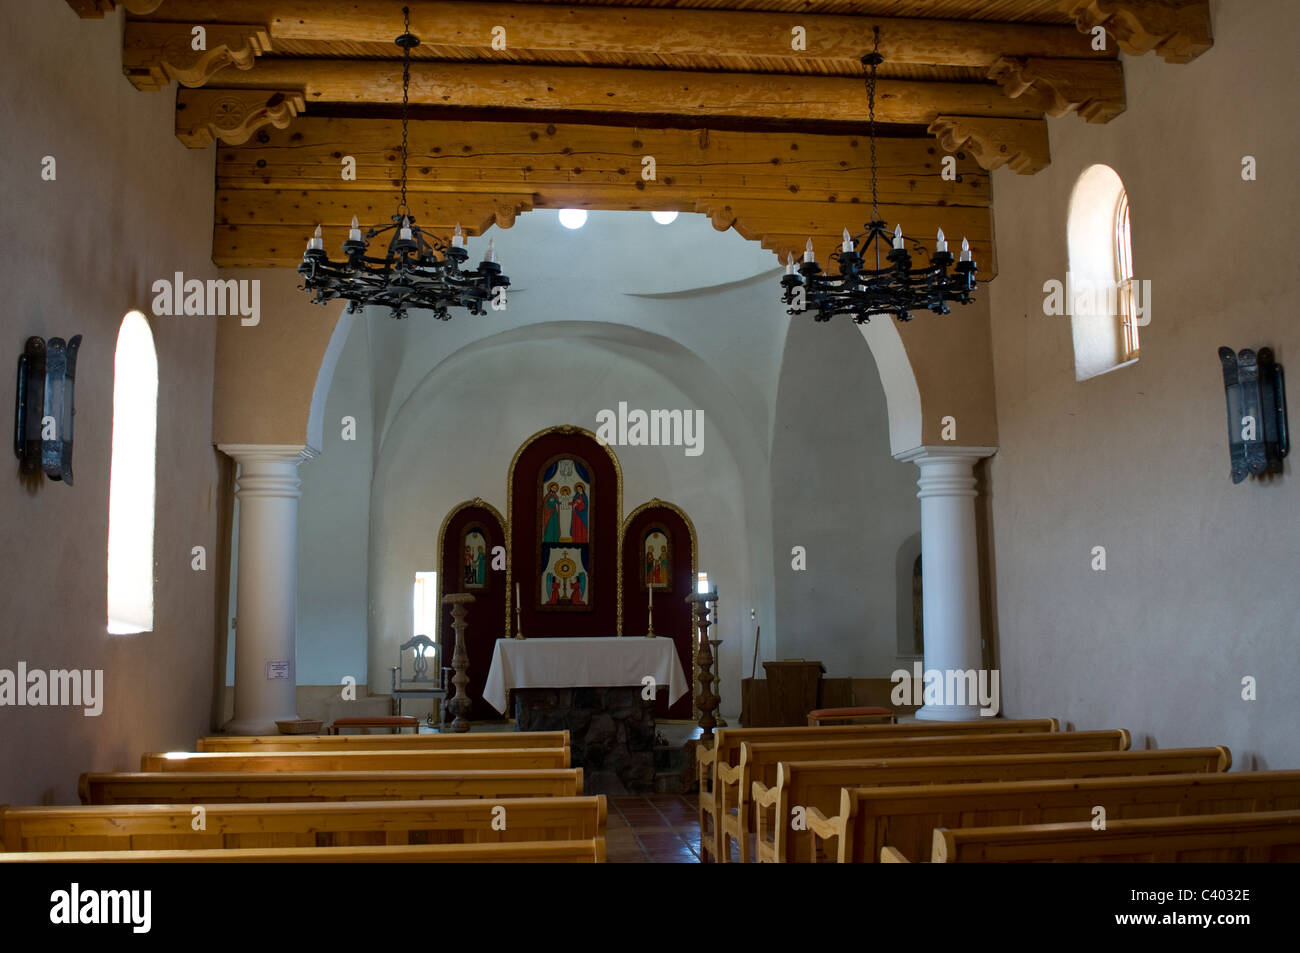 Church interior San Luis Colorado Stock Photo